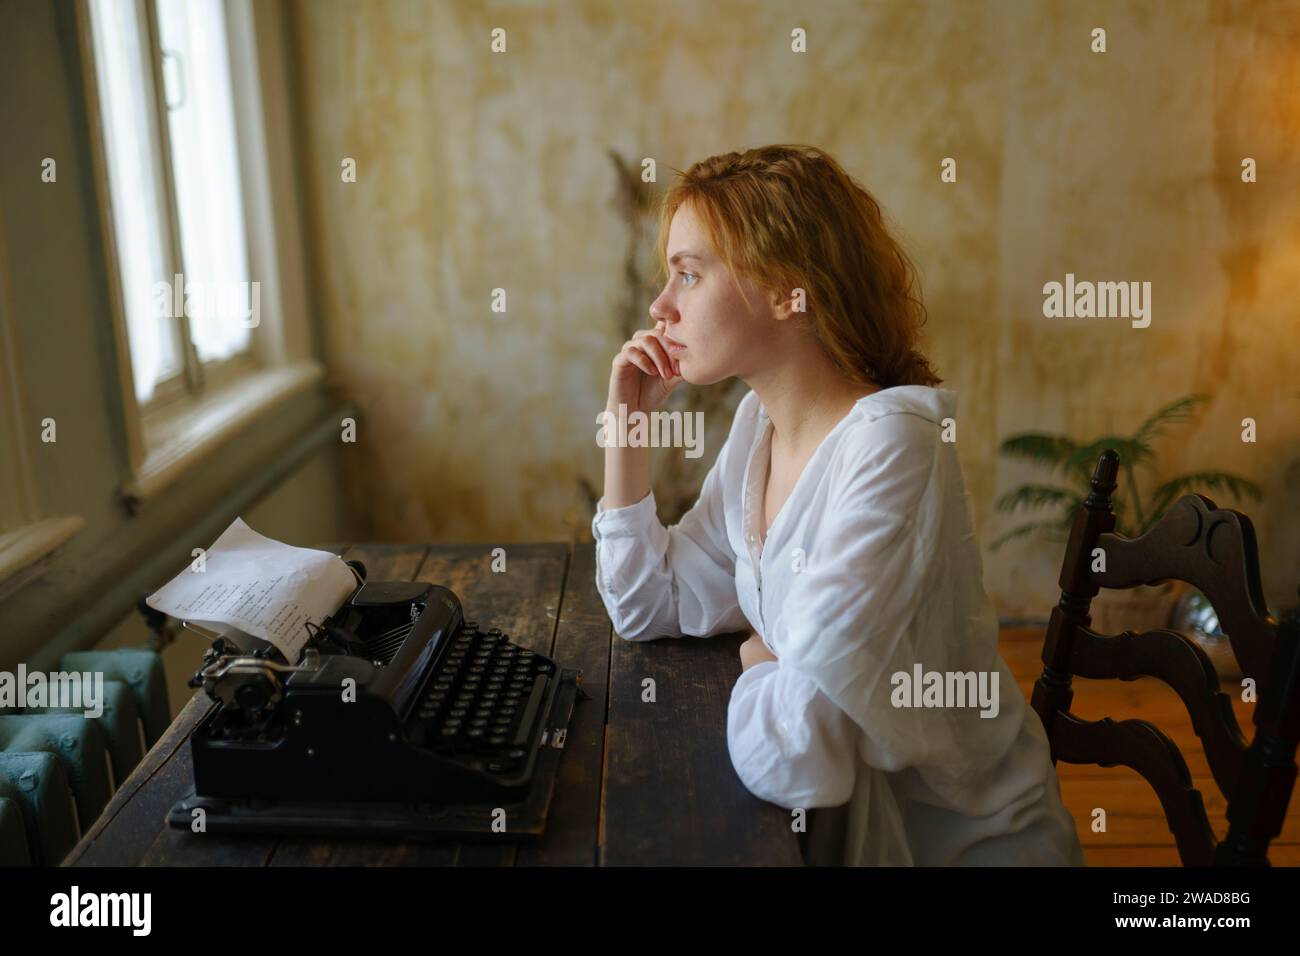 Vue de côté de la femme à l'aide d'une machine à écrire vintage à la maison Banque D'Images